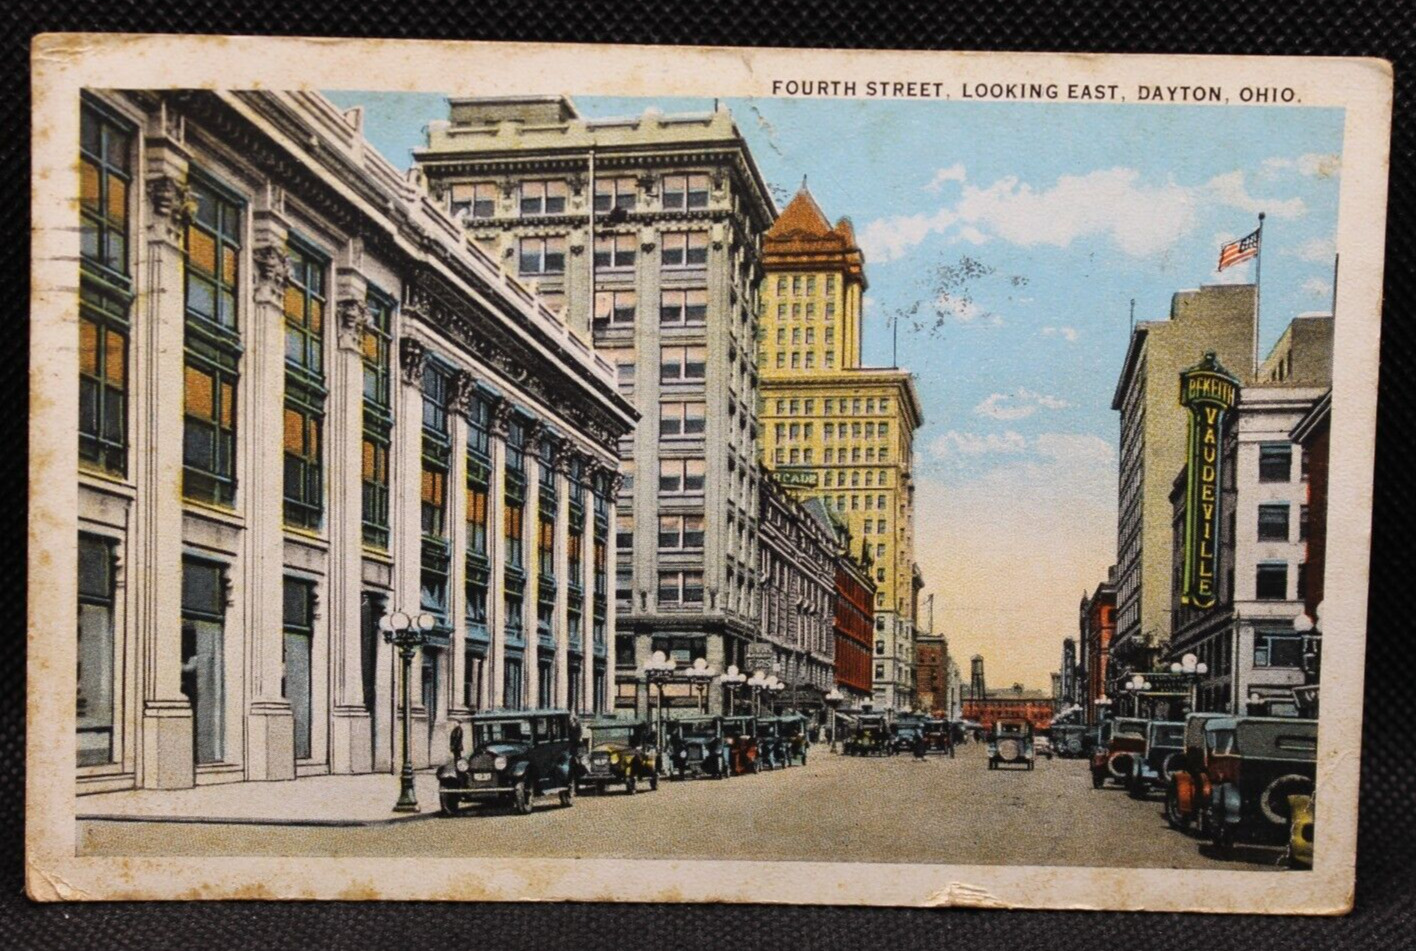 Fourth Street Looking East Dayton Ohio Postcard c. 1926 Curt Teich 5.5x3.5\